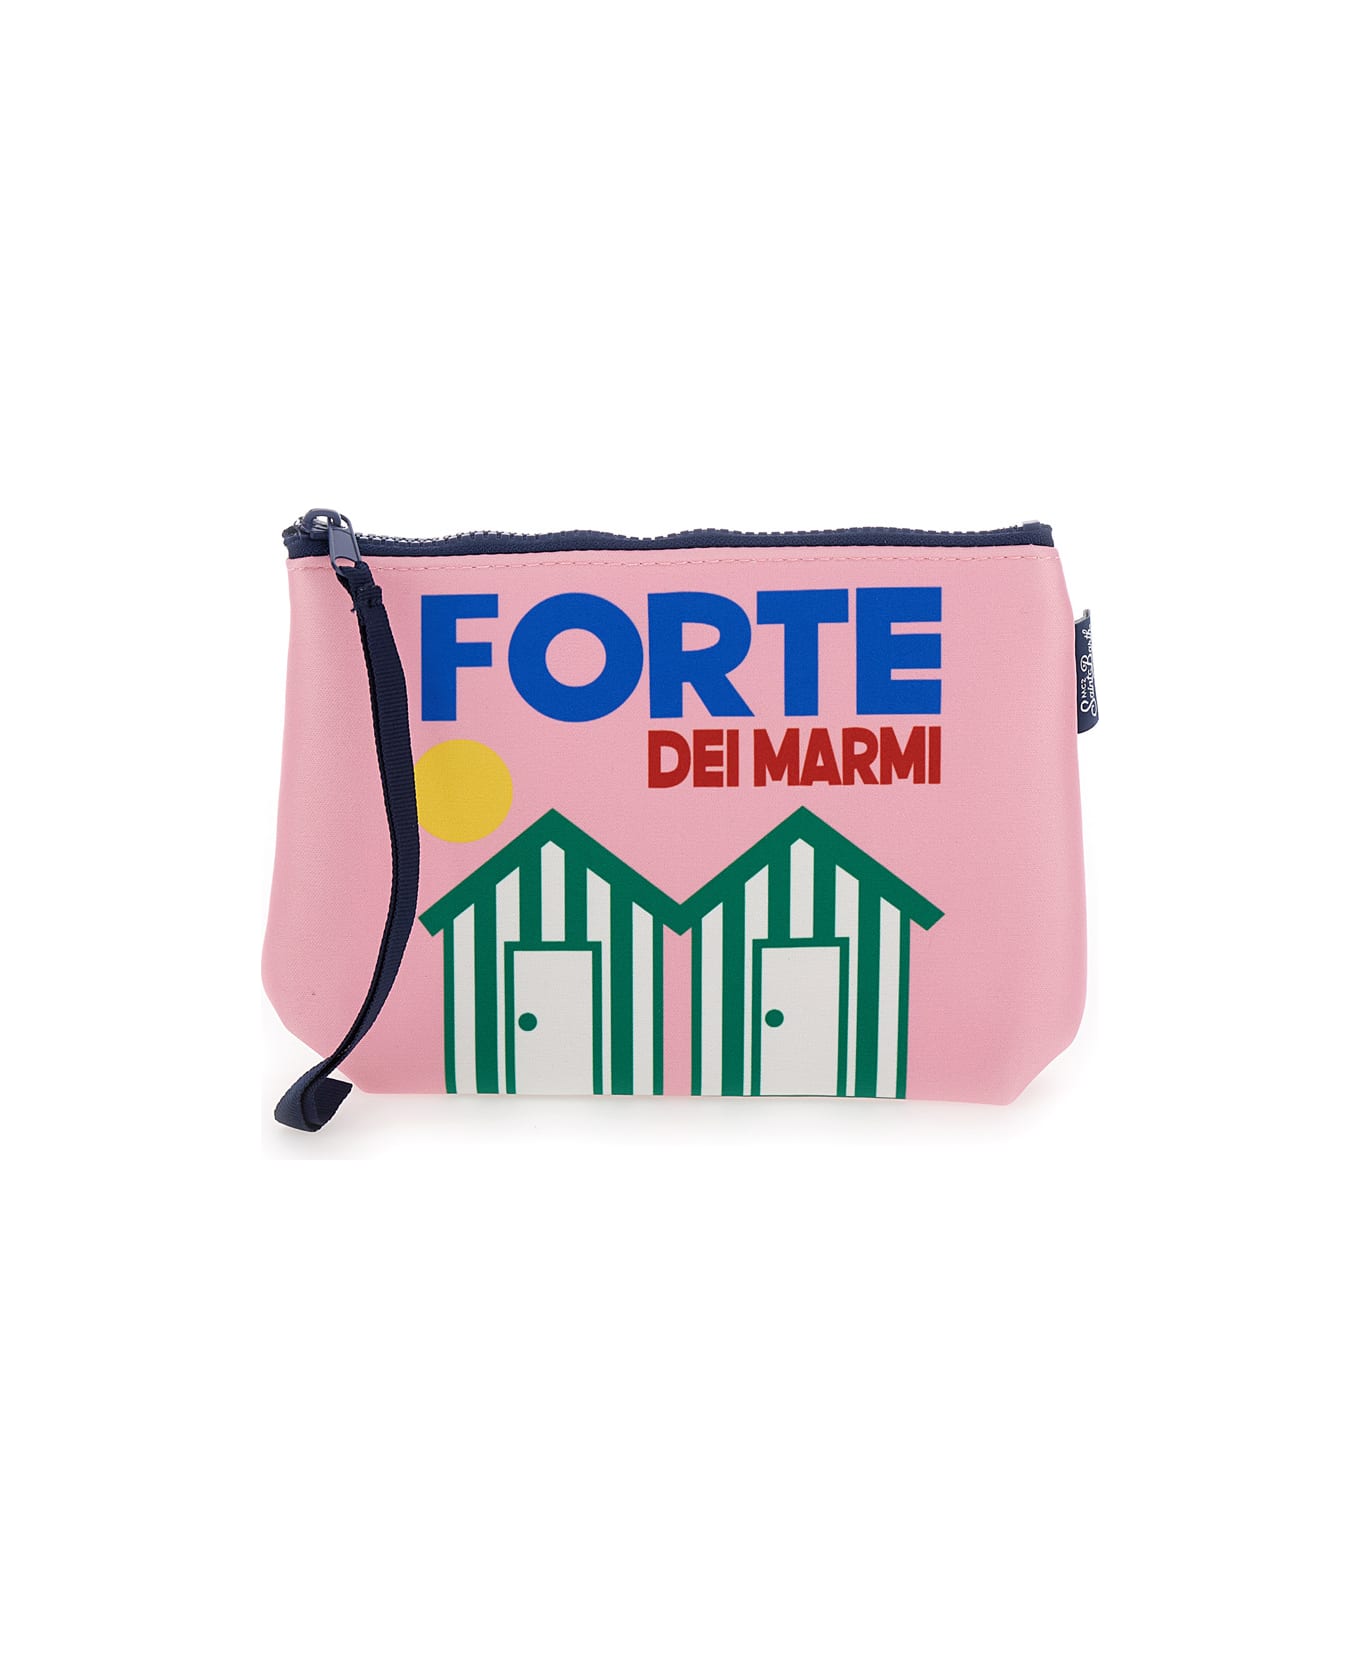 MC2 Saint Barth 'aline' Pink Pochette With Forte Dei Marmi Print In Scuba Fabric Girl - Pink